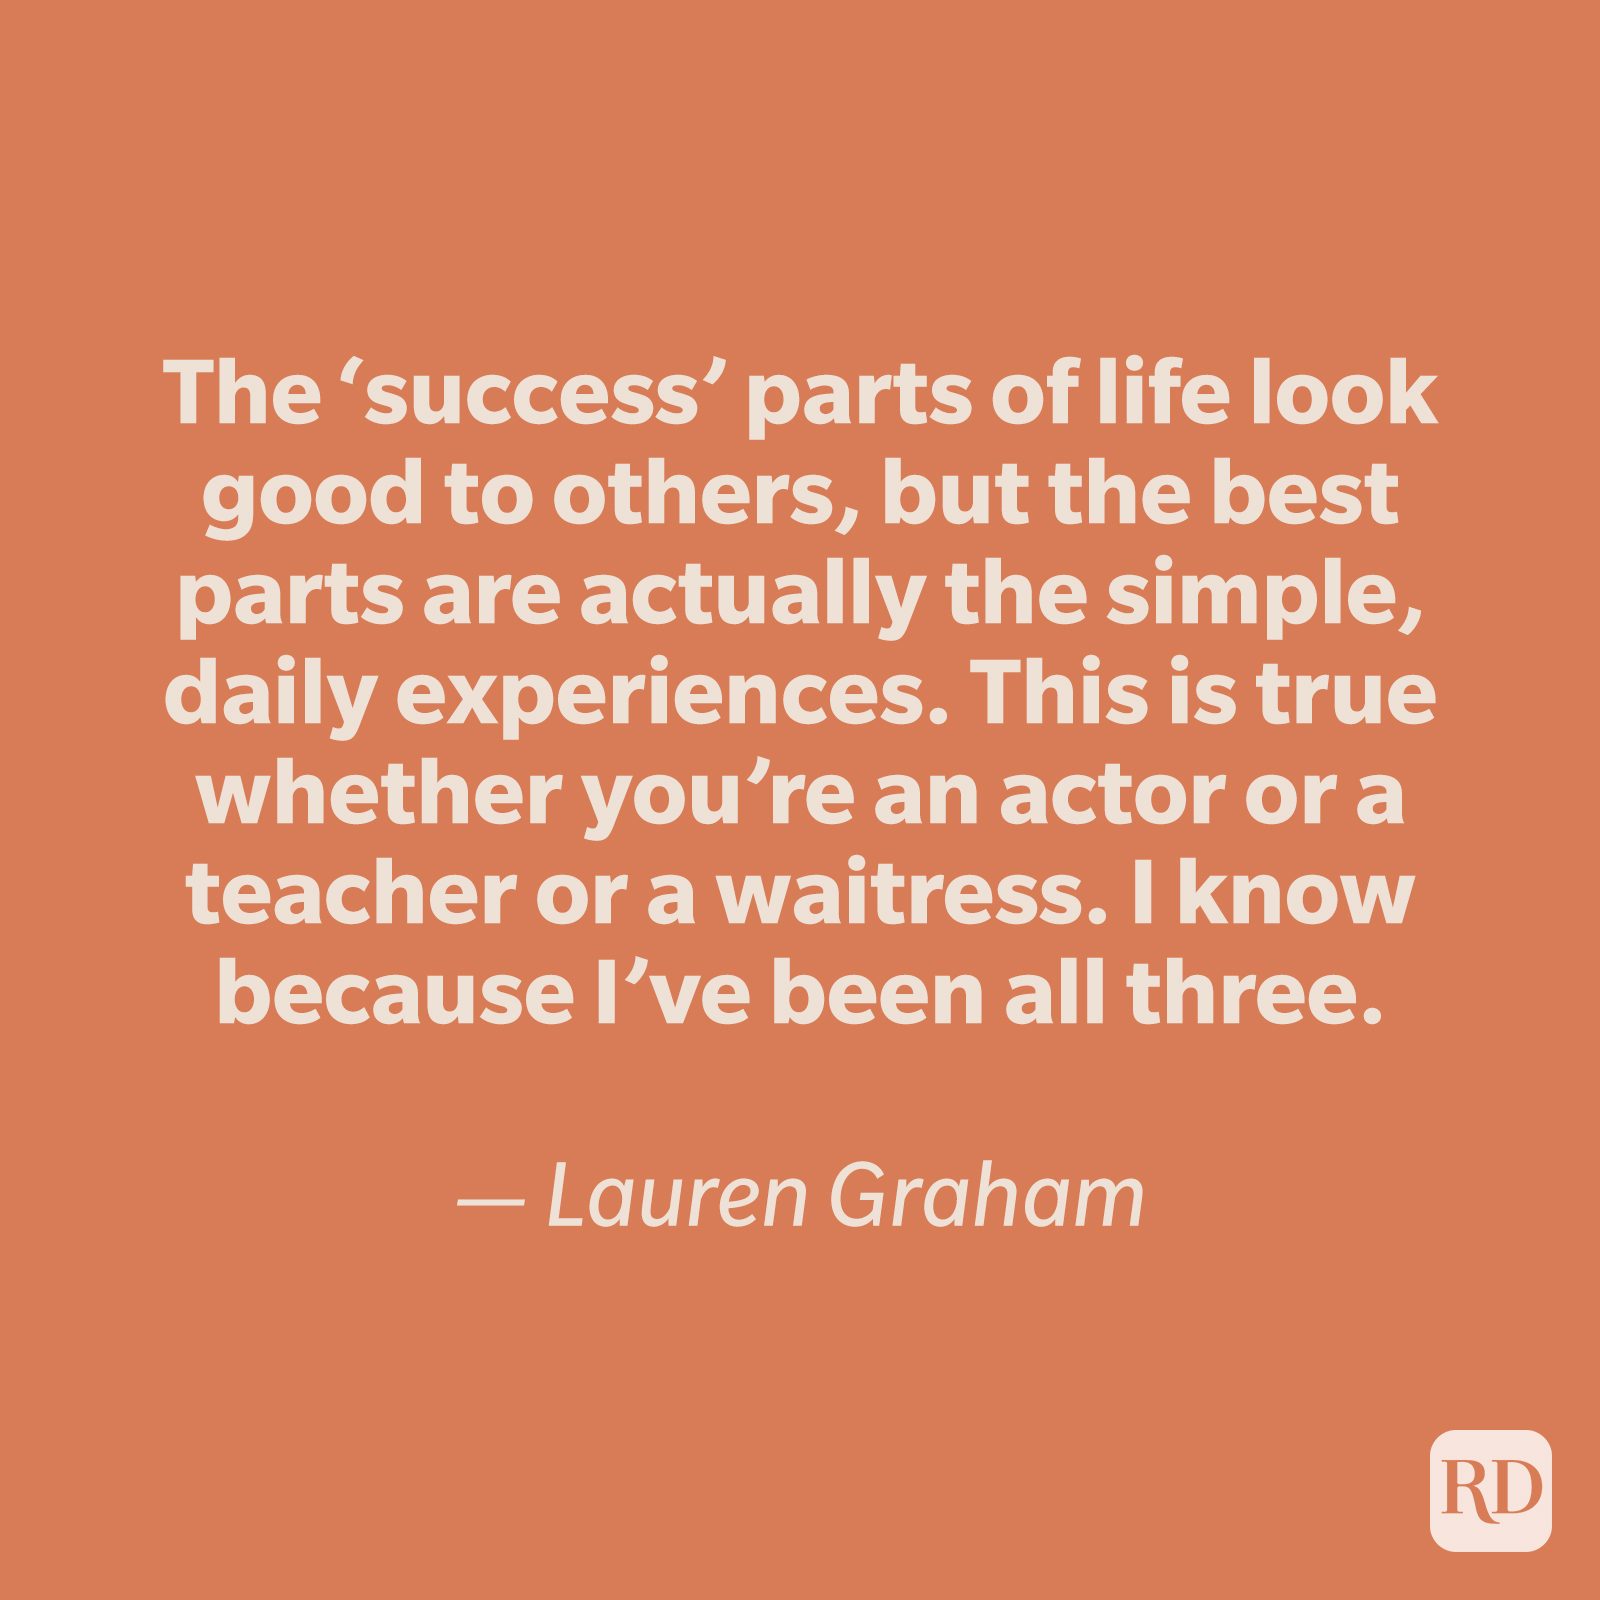 Lauren Graham quote